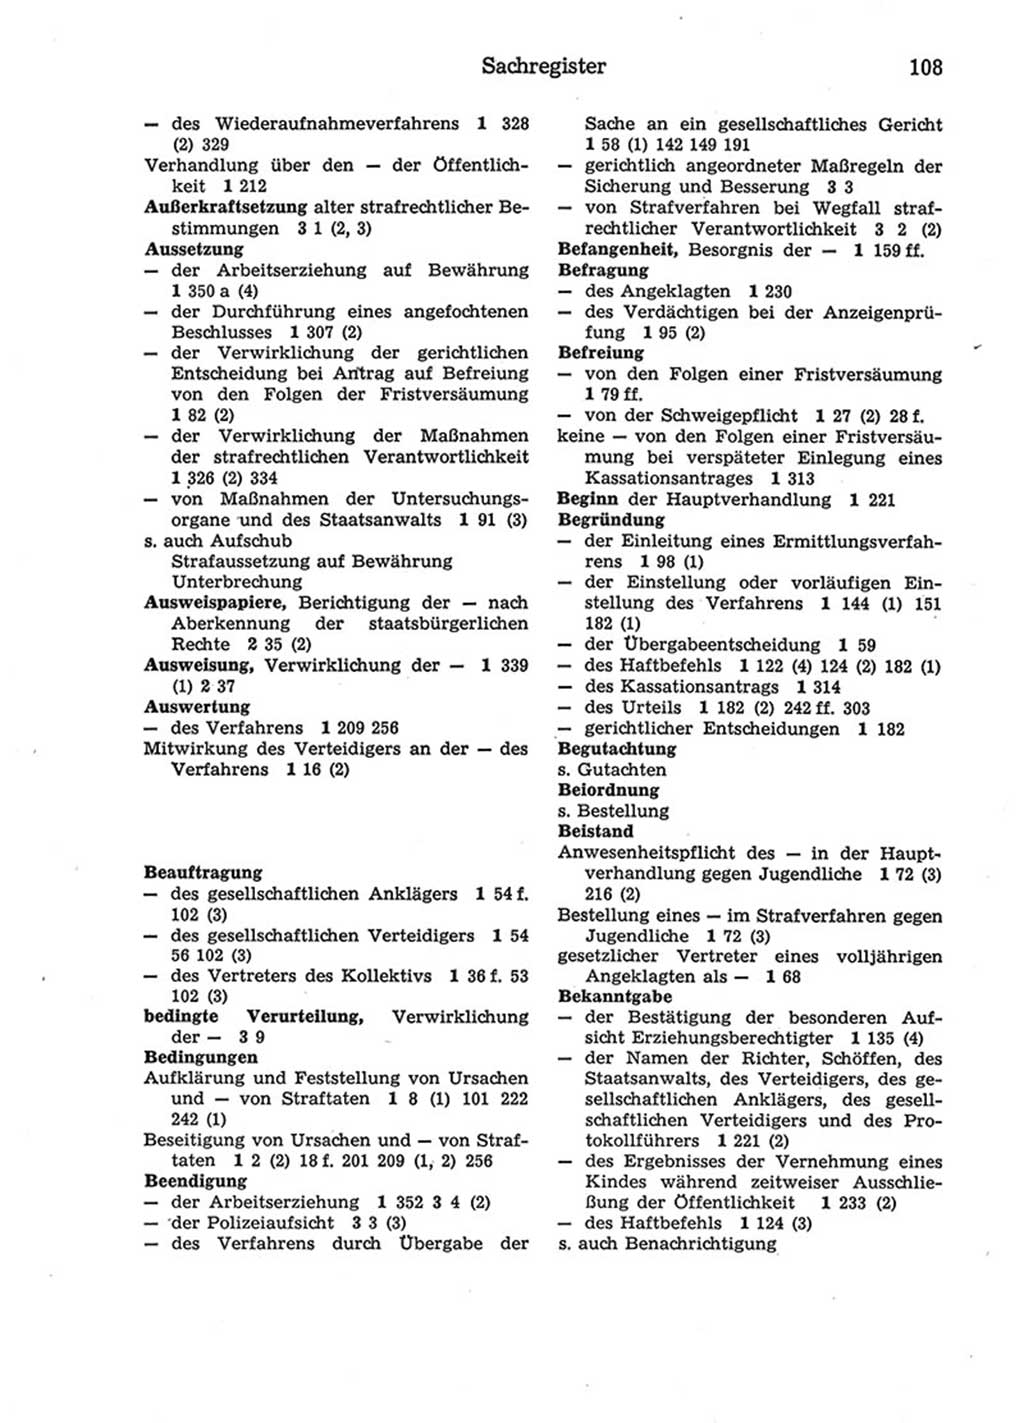 Strafprozeßordnung (StPO) der Deutschen Demokratischen Republik (DDR) 1975, Seite 108 (StPO DDR 1974, S. 108)